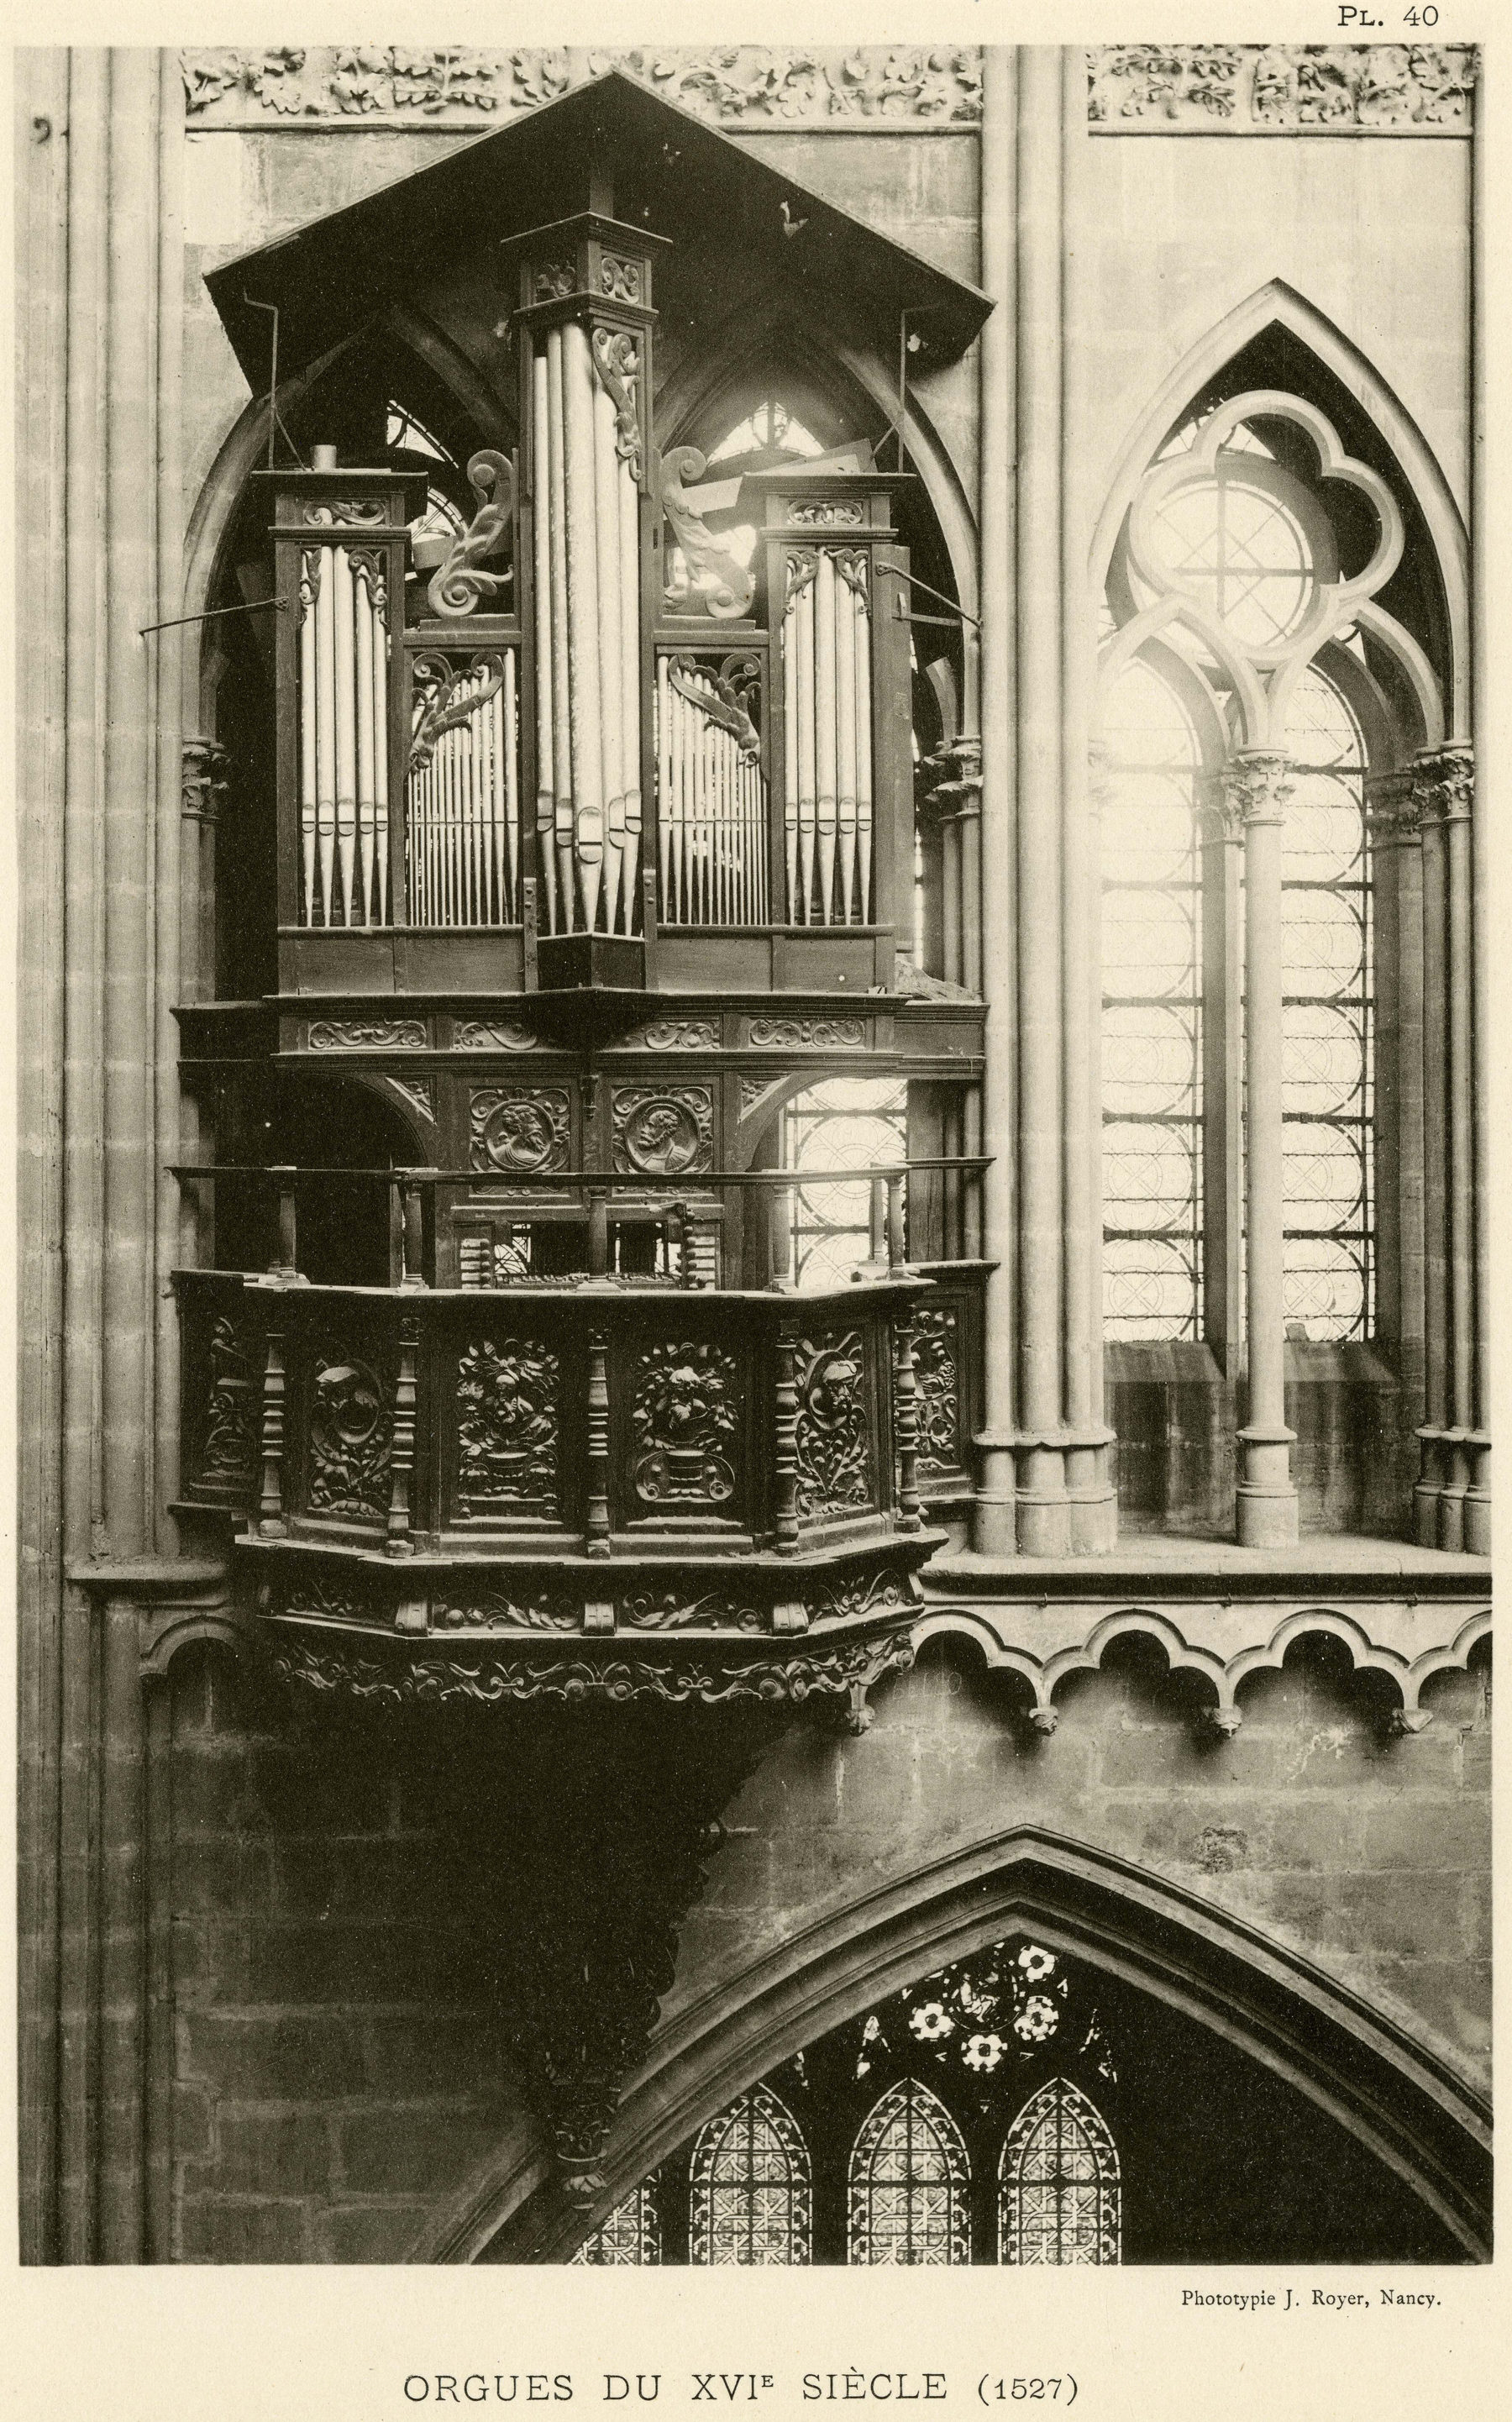 Contenu du Orgues de la cathédrale de Metz (1527)